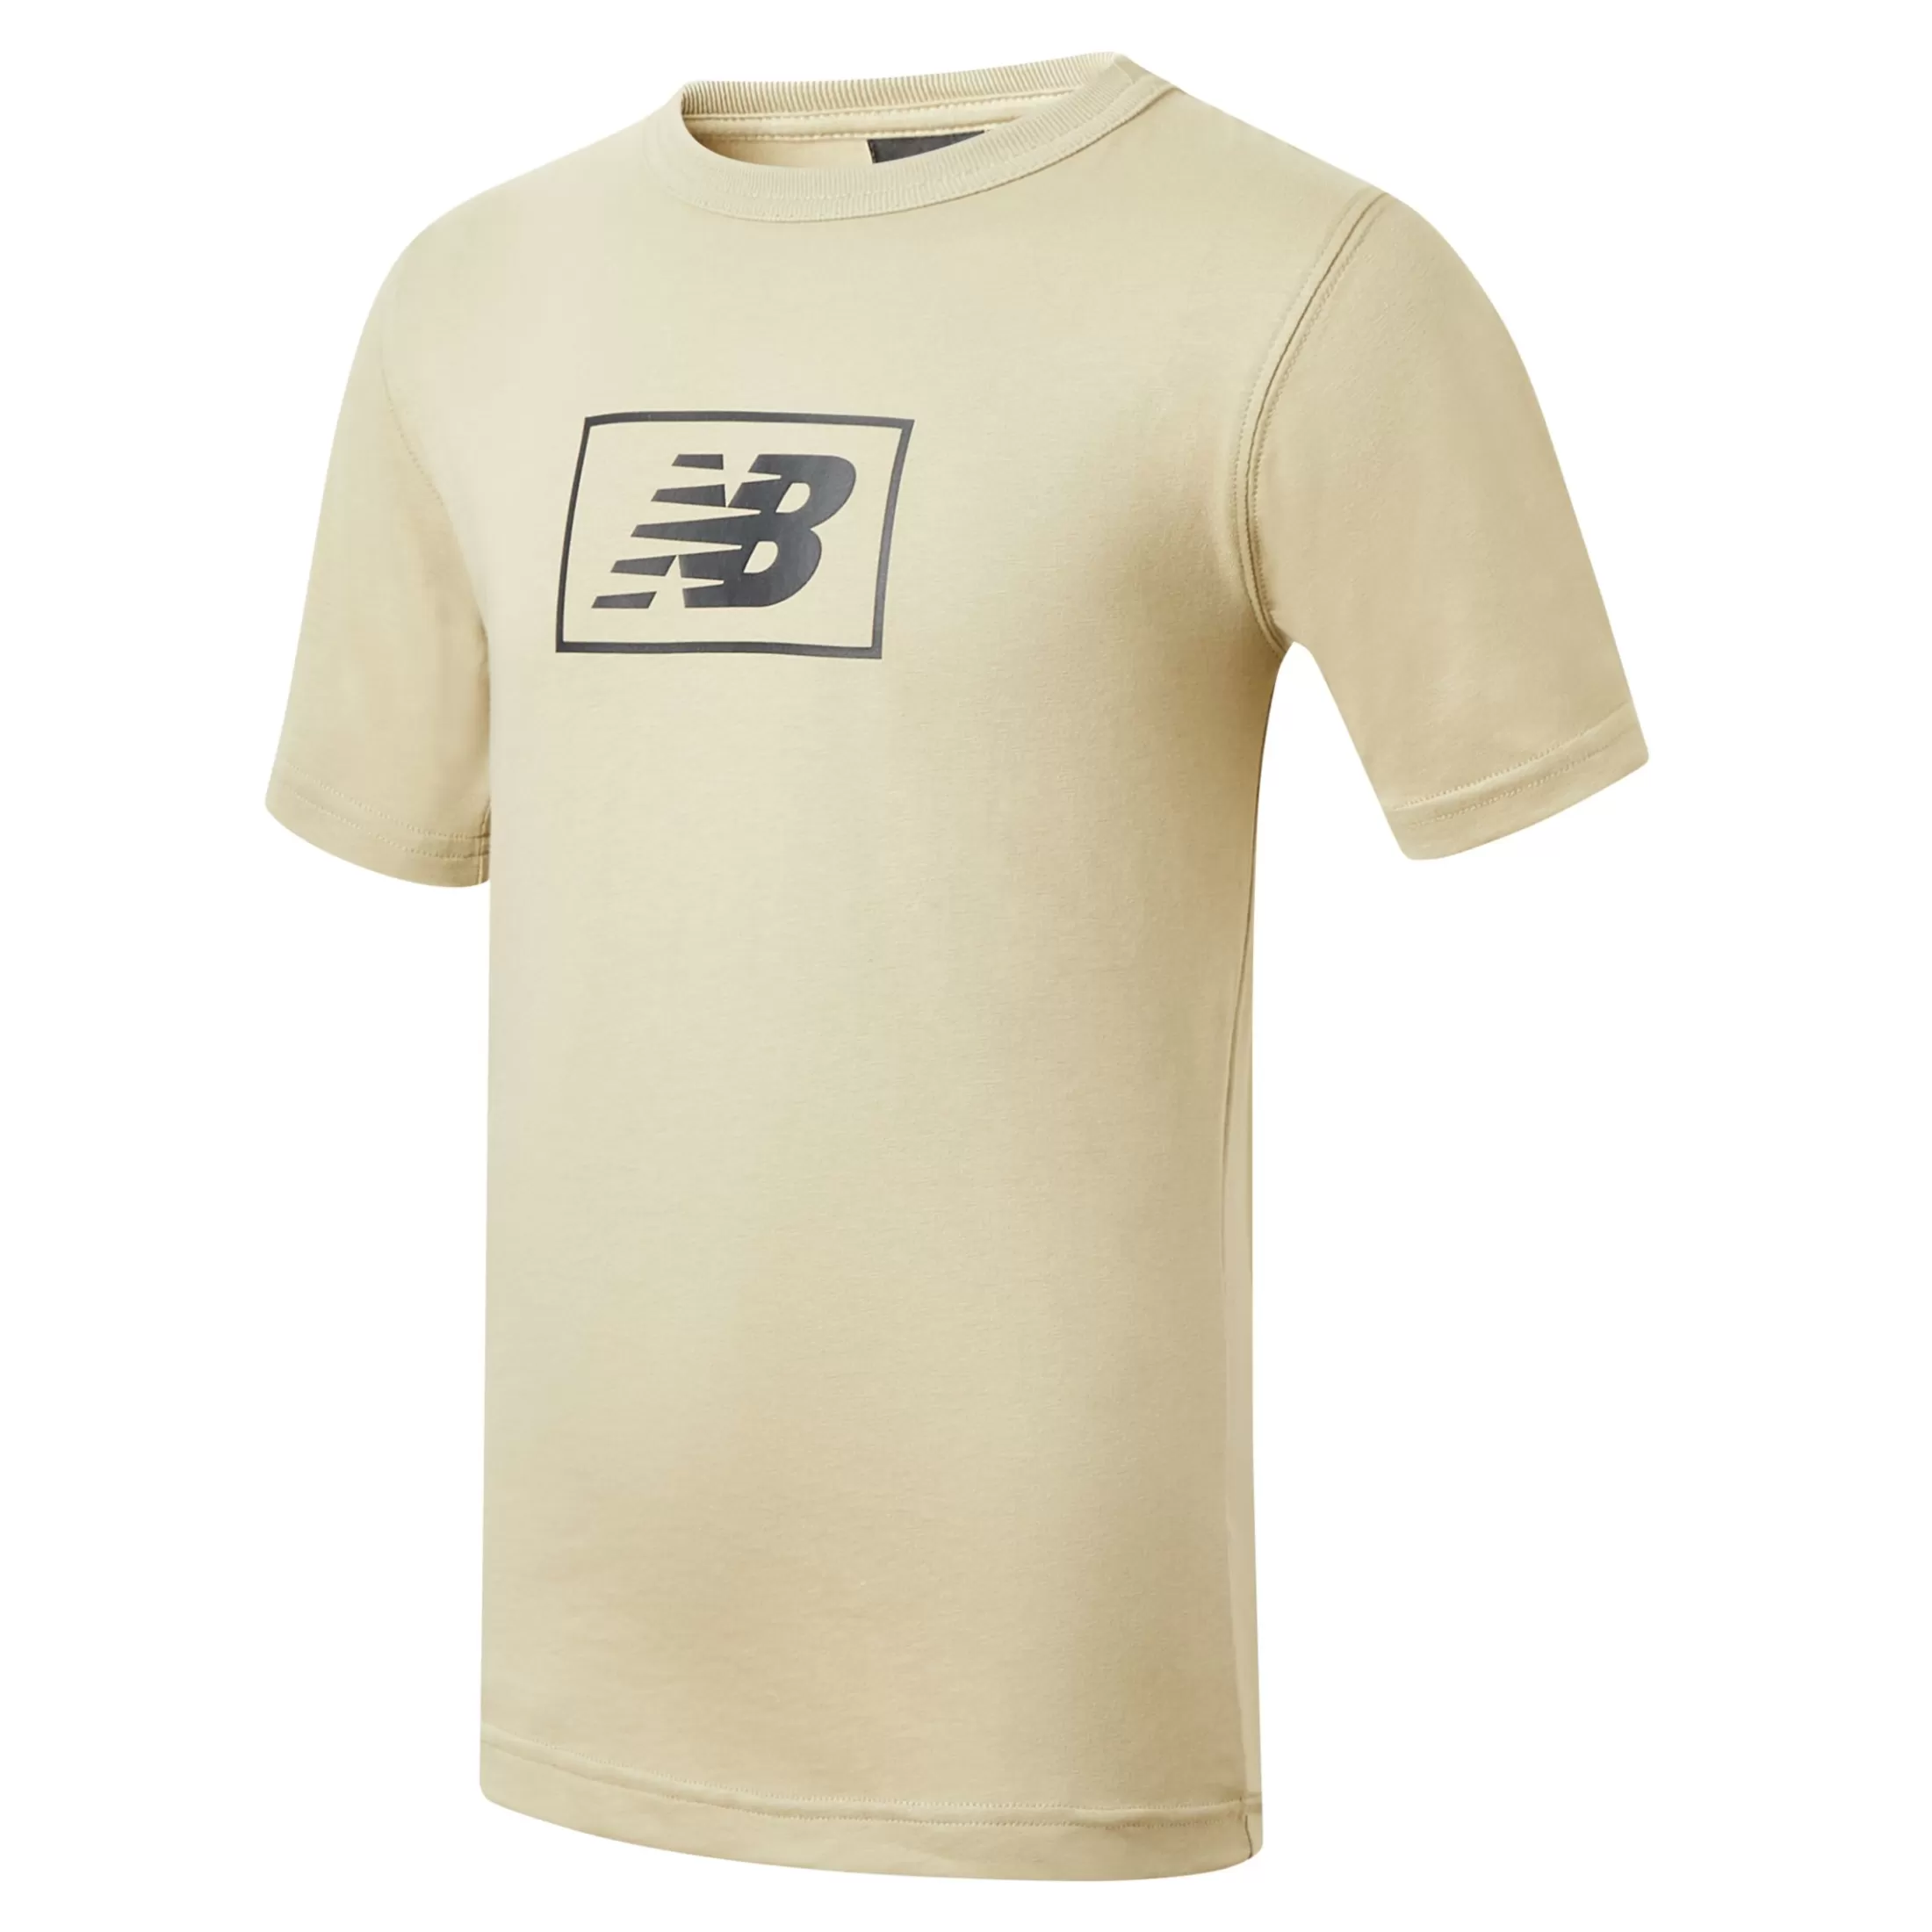 Online Criança NB Essentials Logo T-Shirt Outlet vestuário